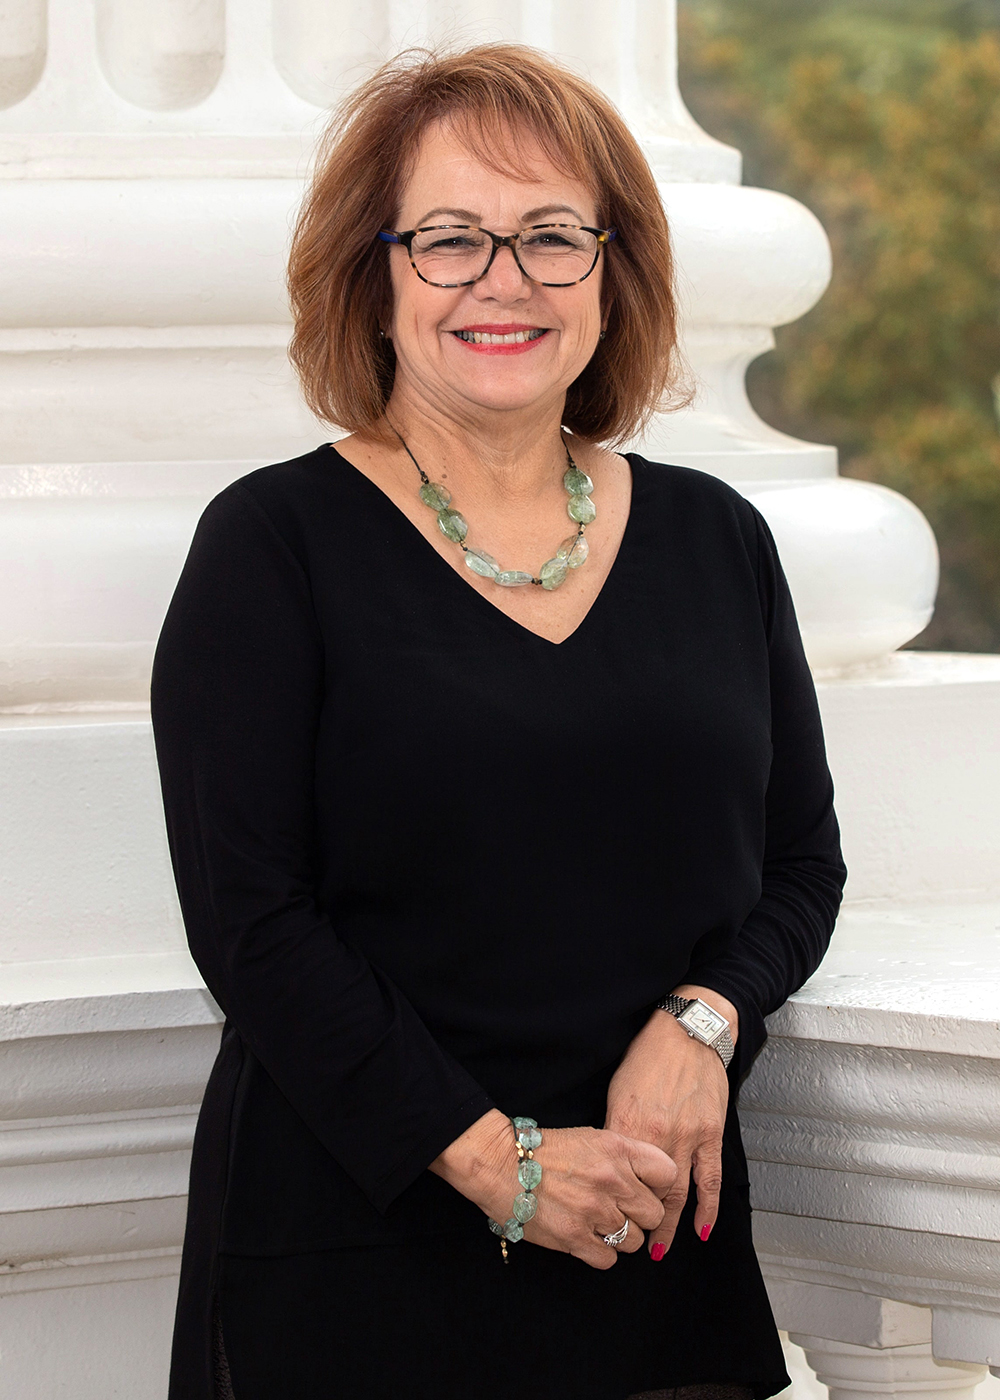  senator María Durazo